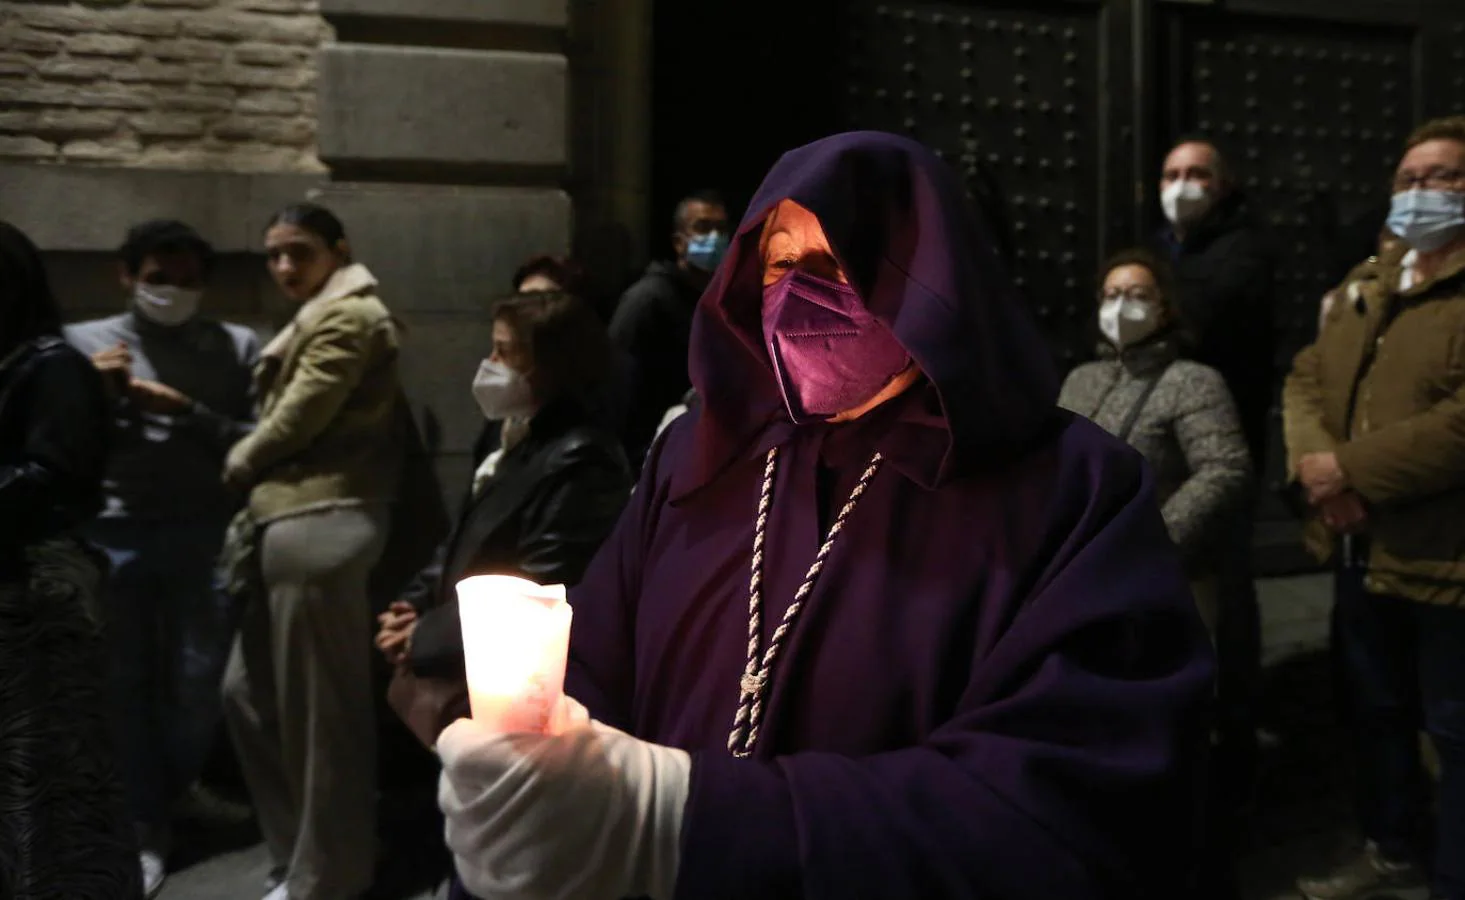 Lunes Santo en Toledo: procesión del Cristo Cautivo